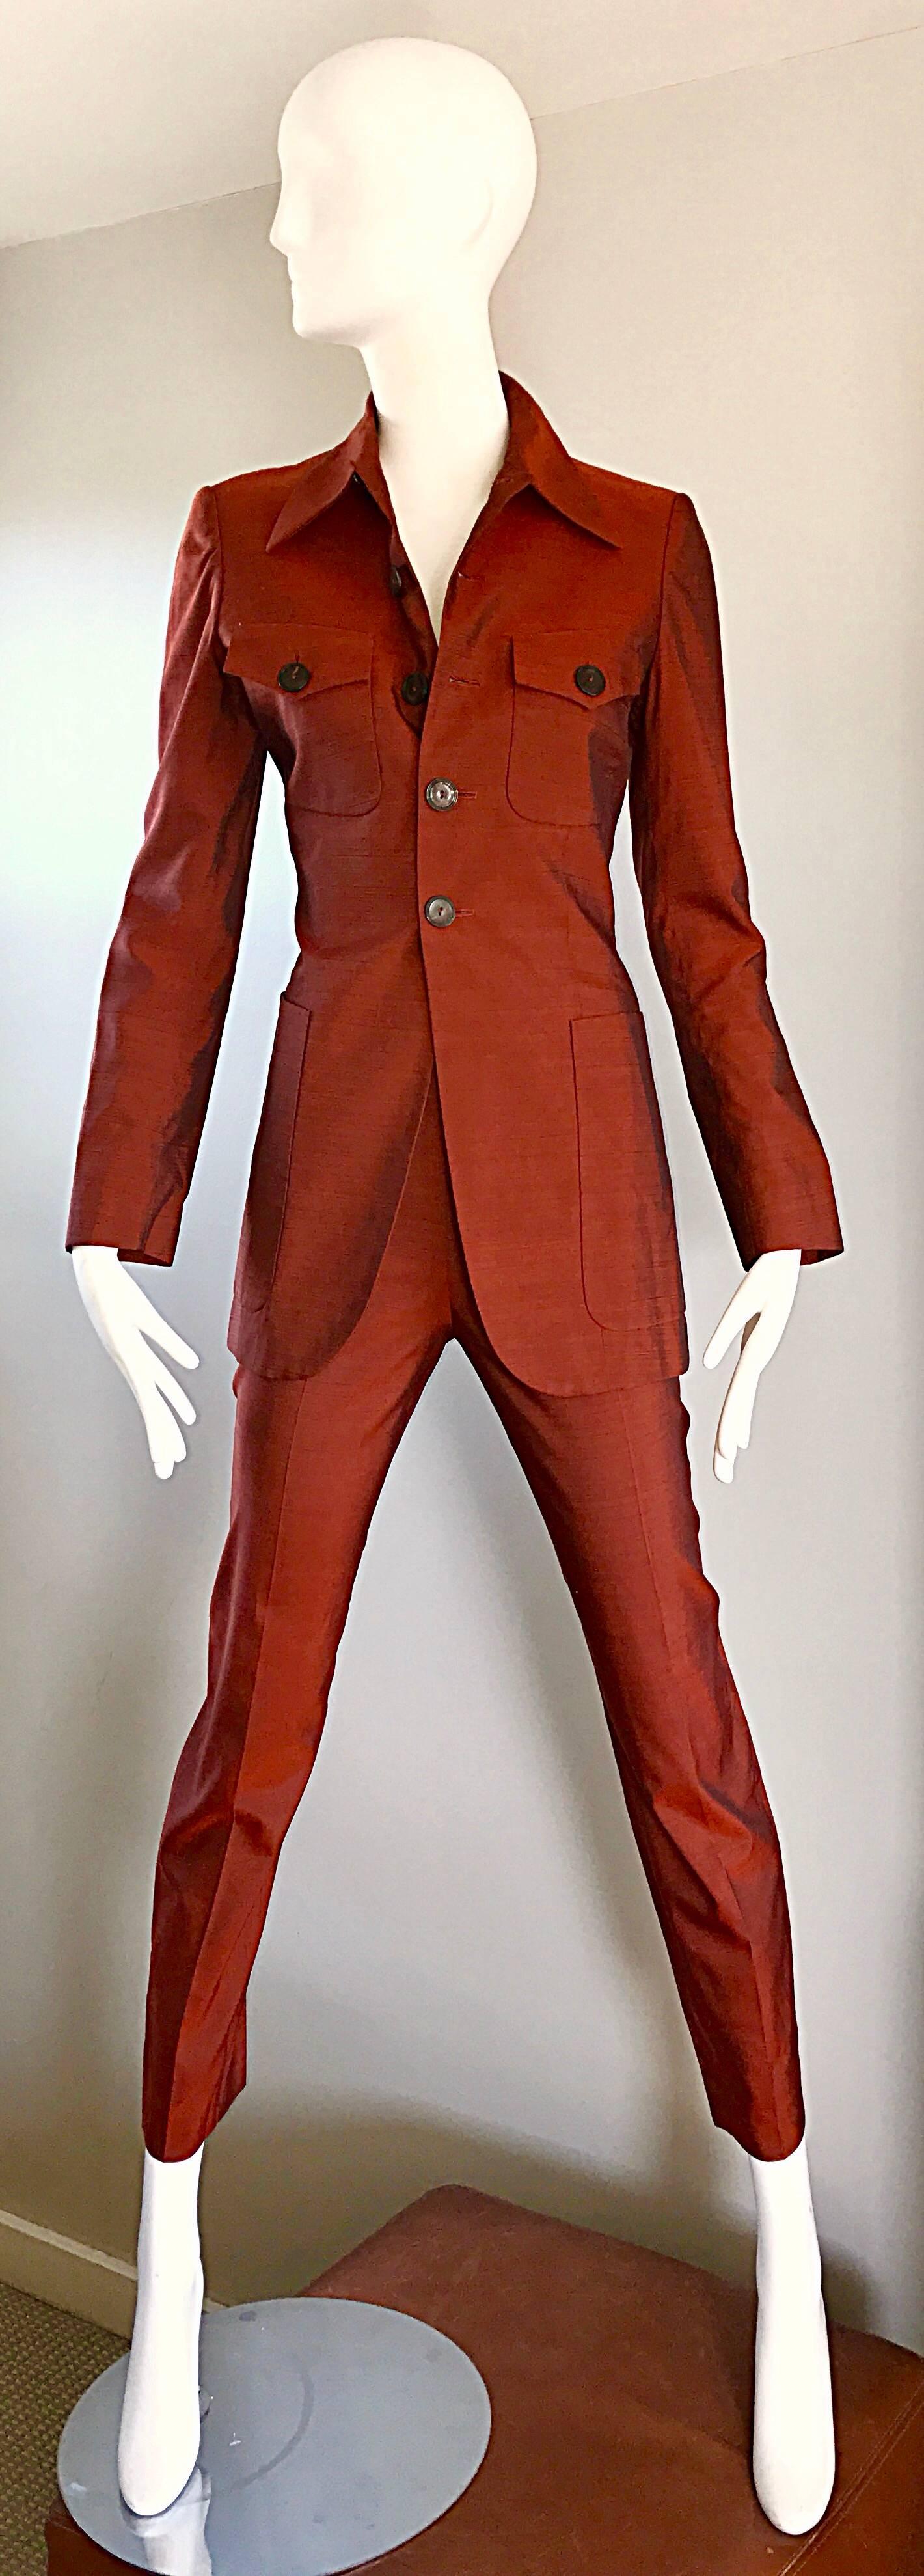 rust orange suits